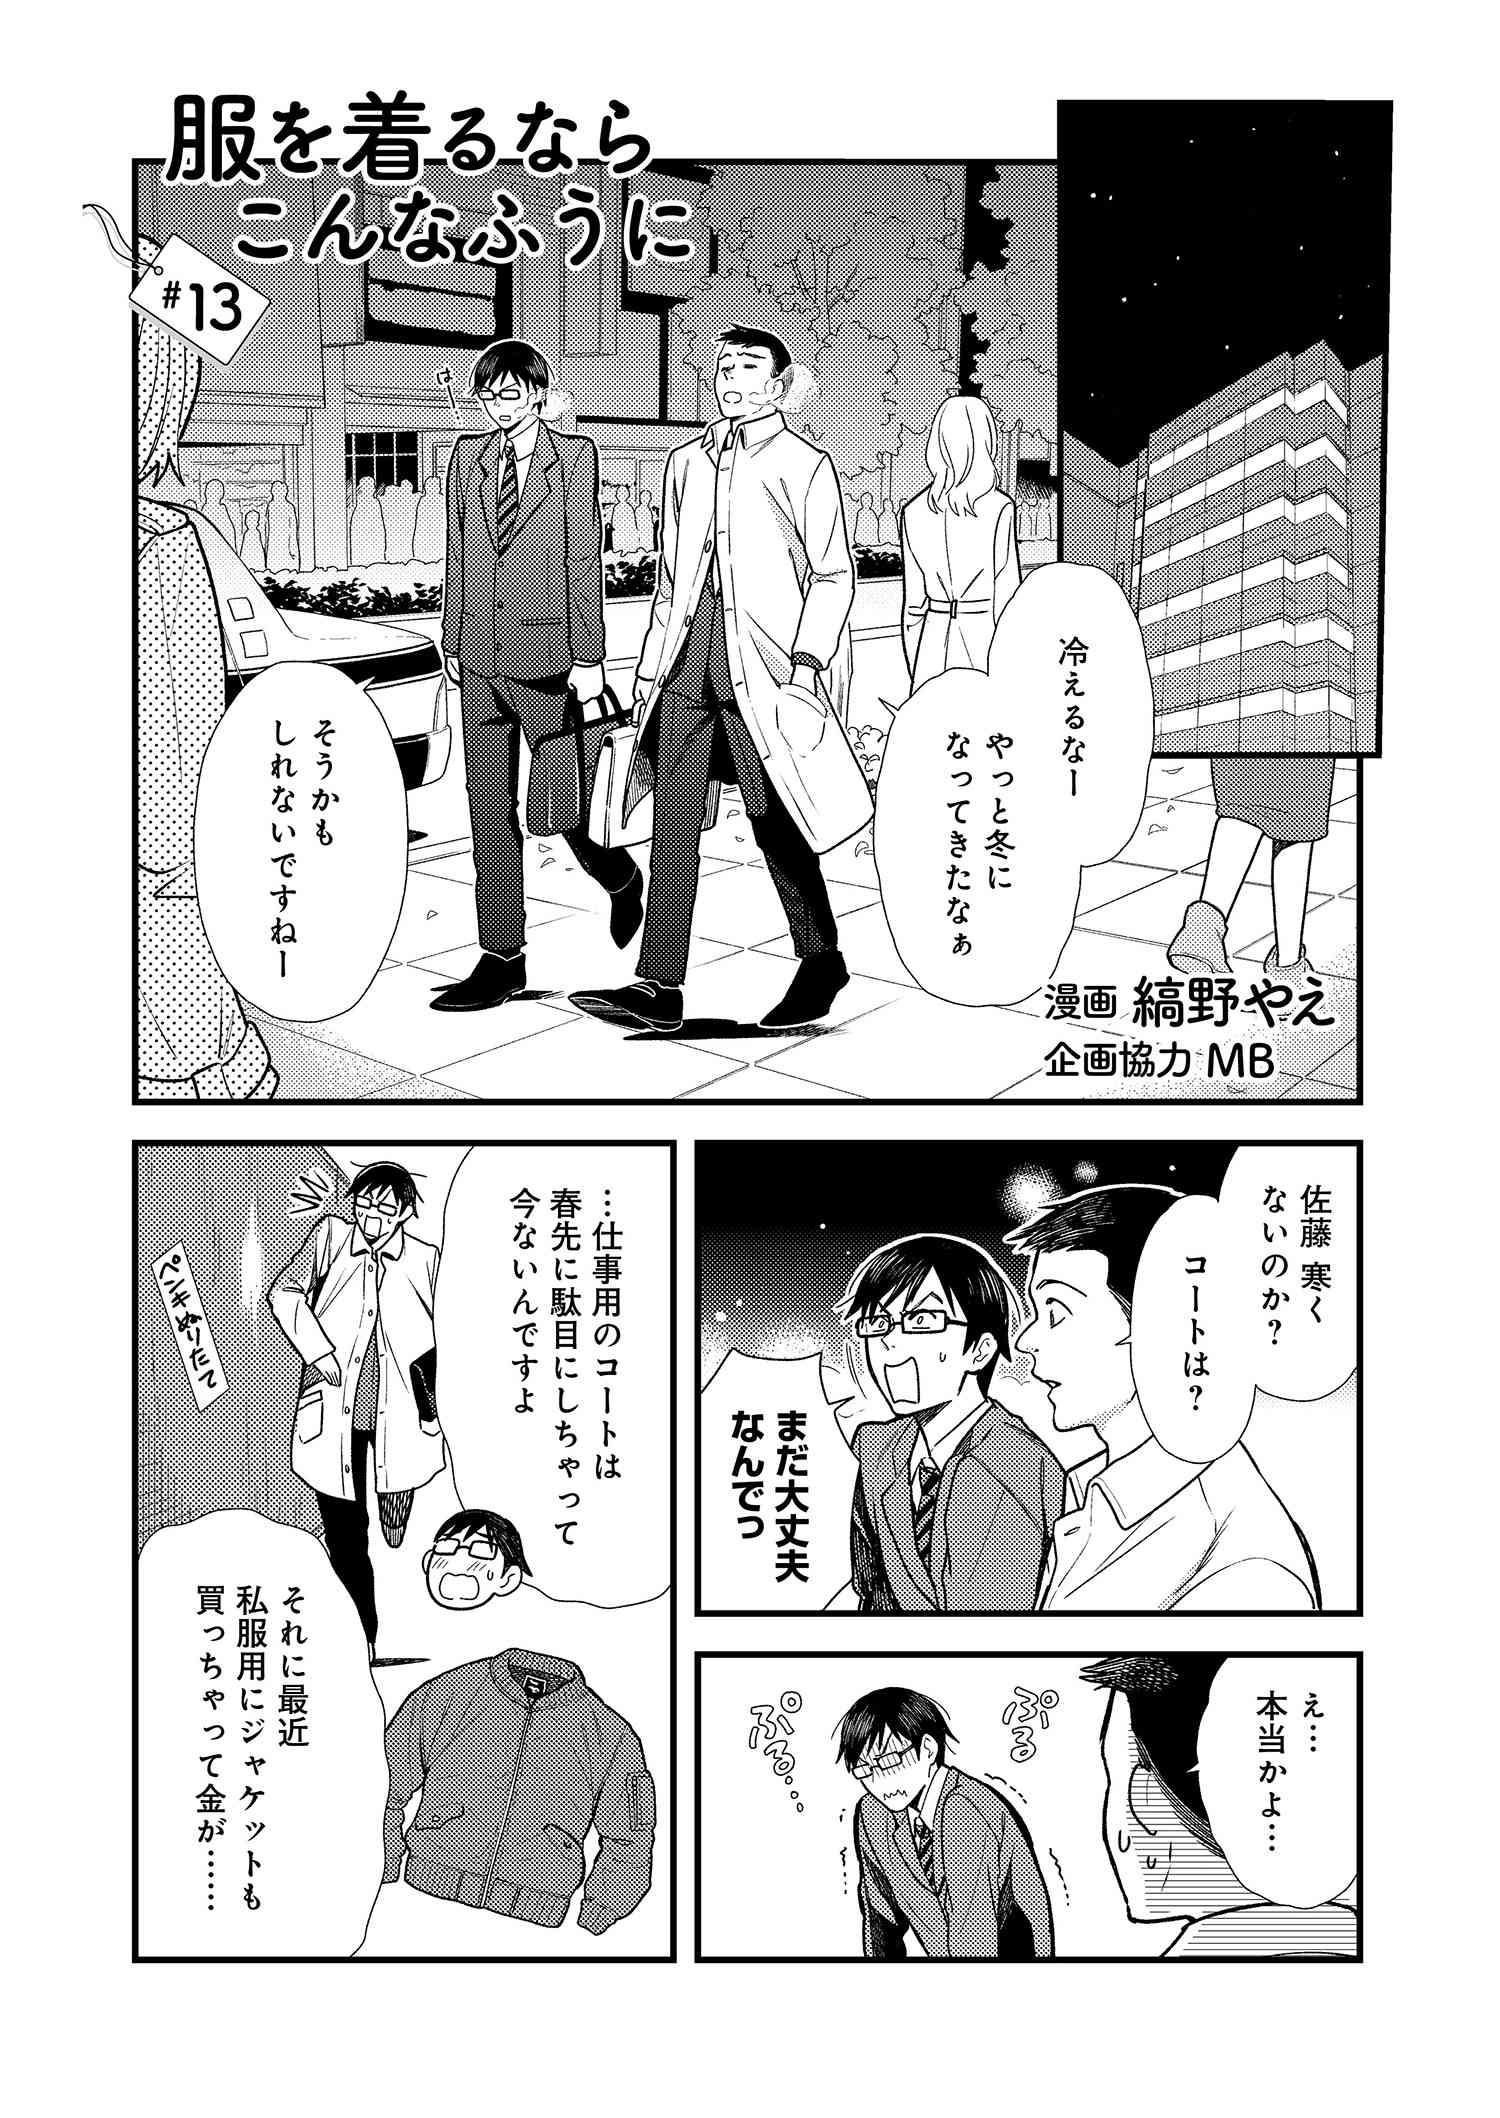 Fuku o Kiru Nara Konna Fuu ni - 服を着るならこんなふうに - Chapter 13 - Page 1